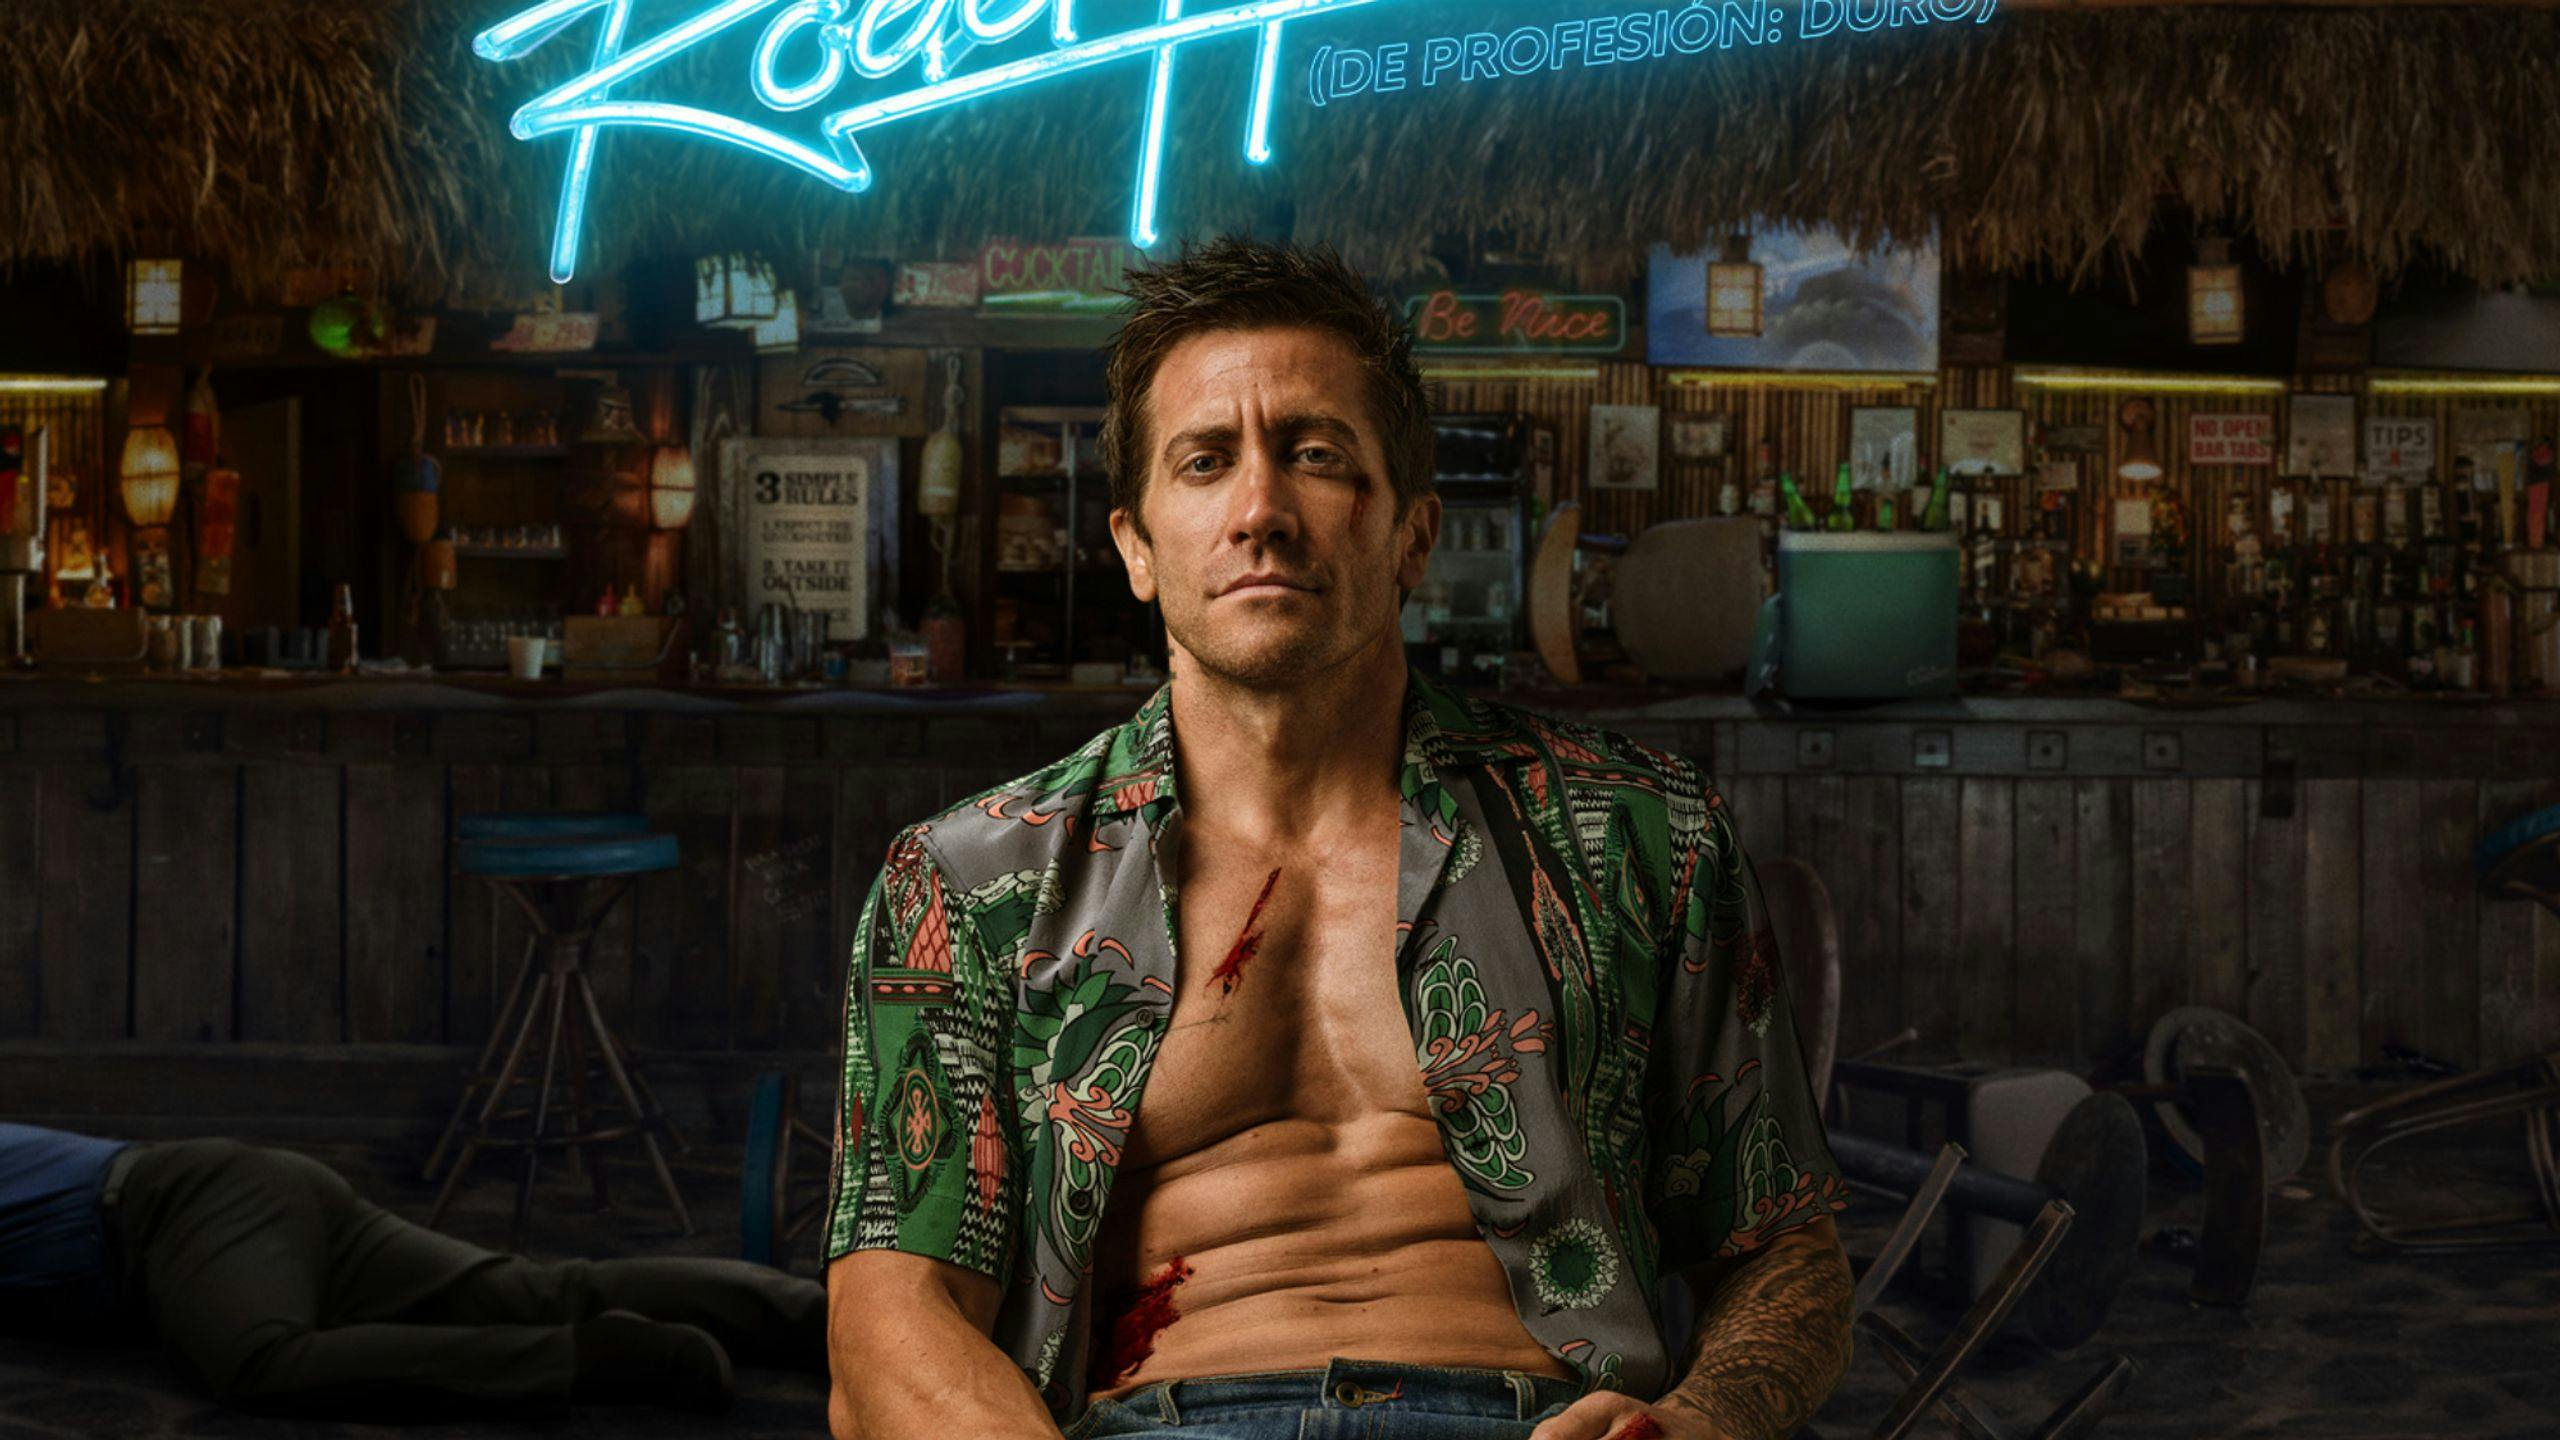 Imagen del cartel promocional de ‘De profesión: duro', protagonizada por Jake Gyllenhaal